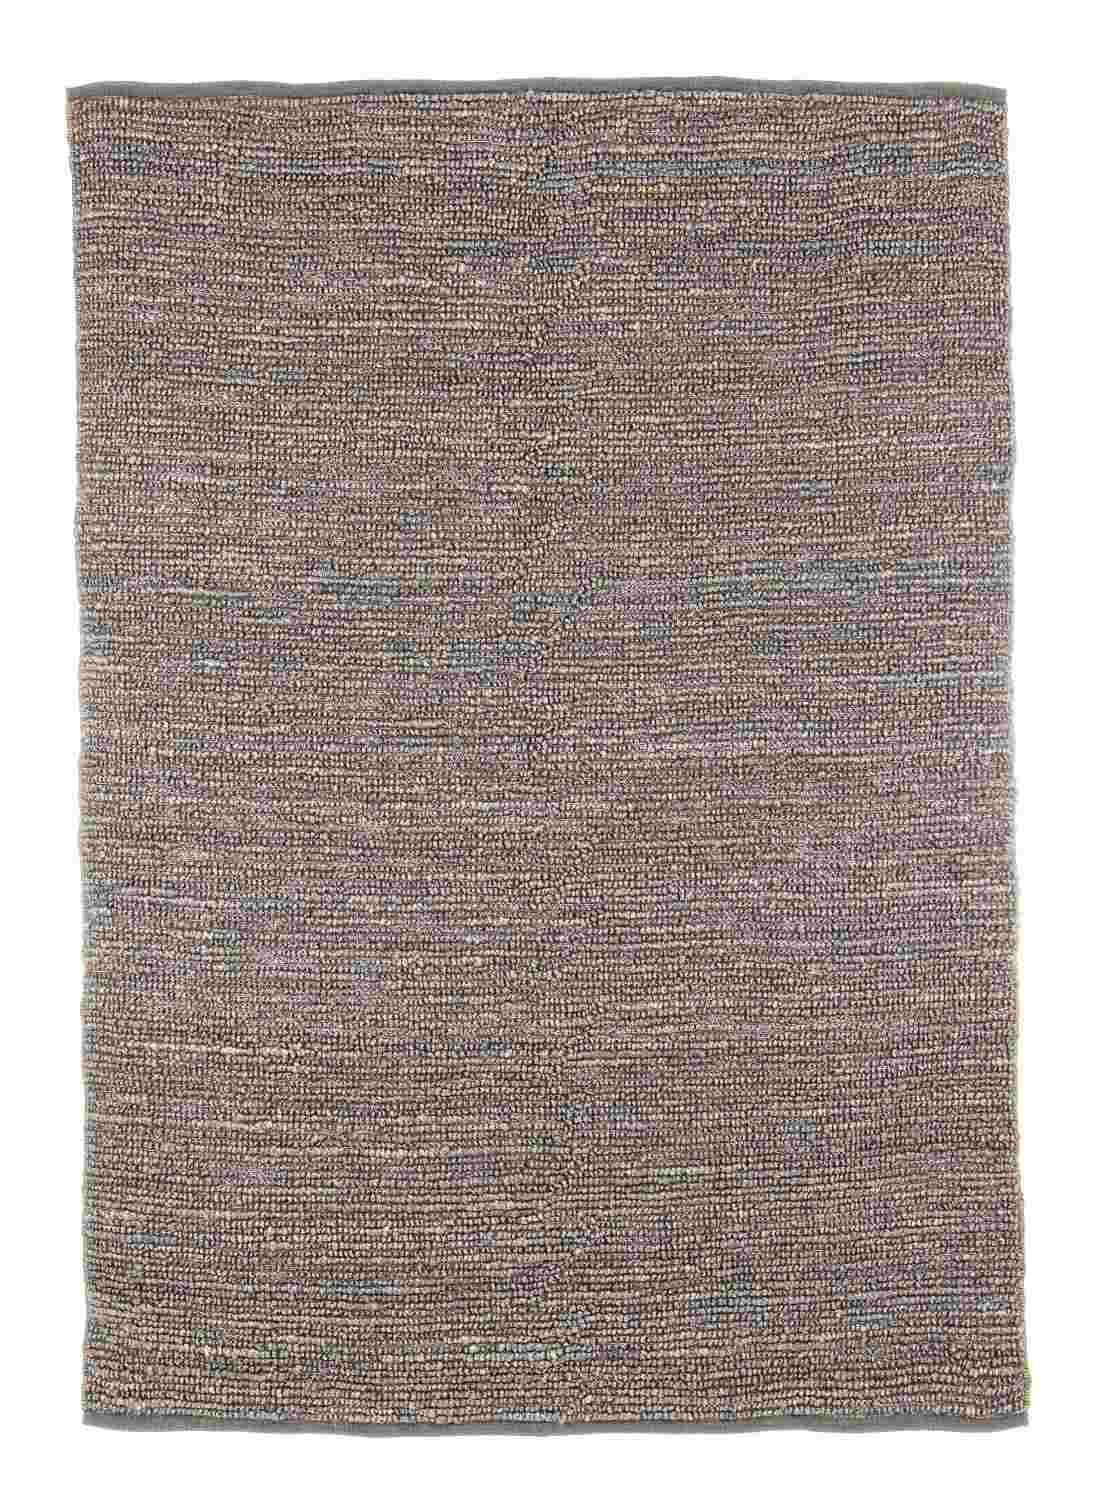 Der Teppich Zanzibar überzeugt mit seinem klassischen Design. Gefertigt wurde er aus 100% Jute. Der Teppich besitzt einen braunen Farbton und die Maße von 170x240 cm.